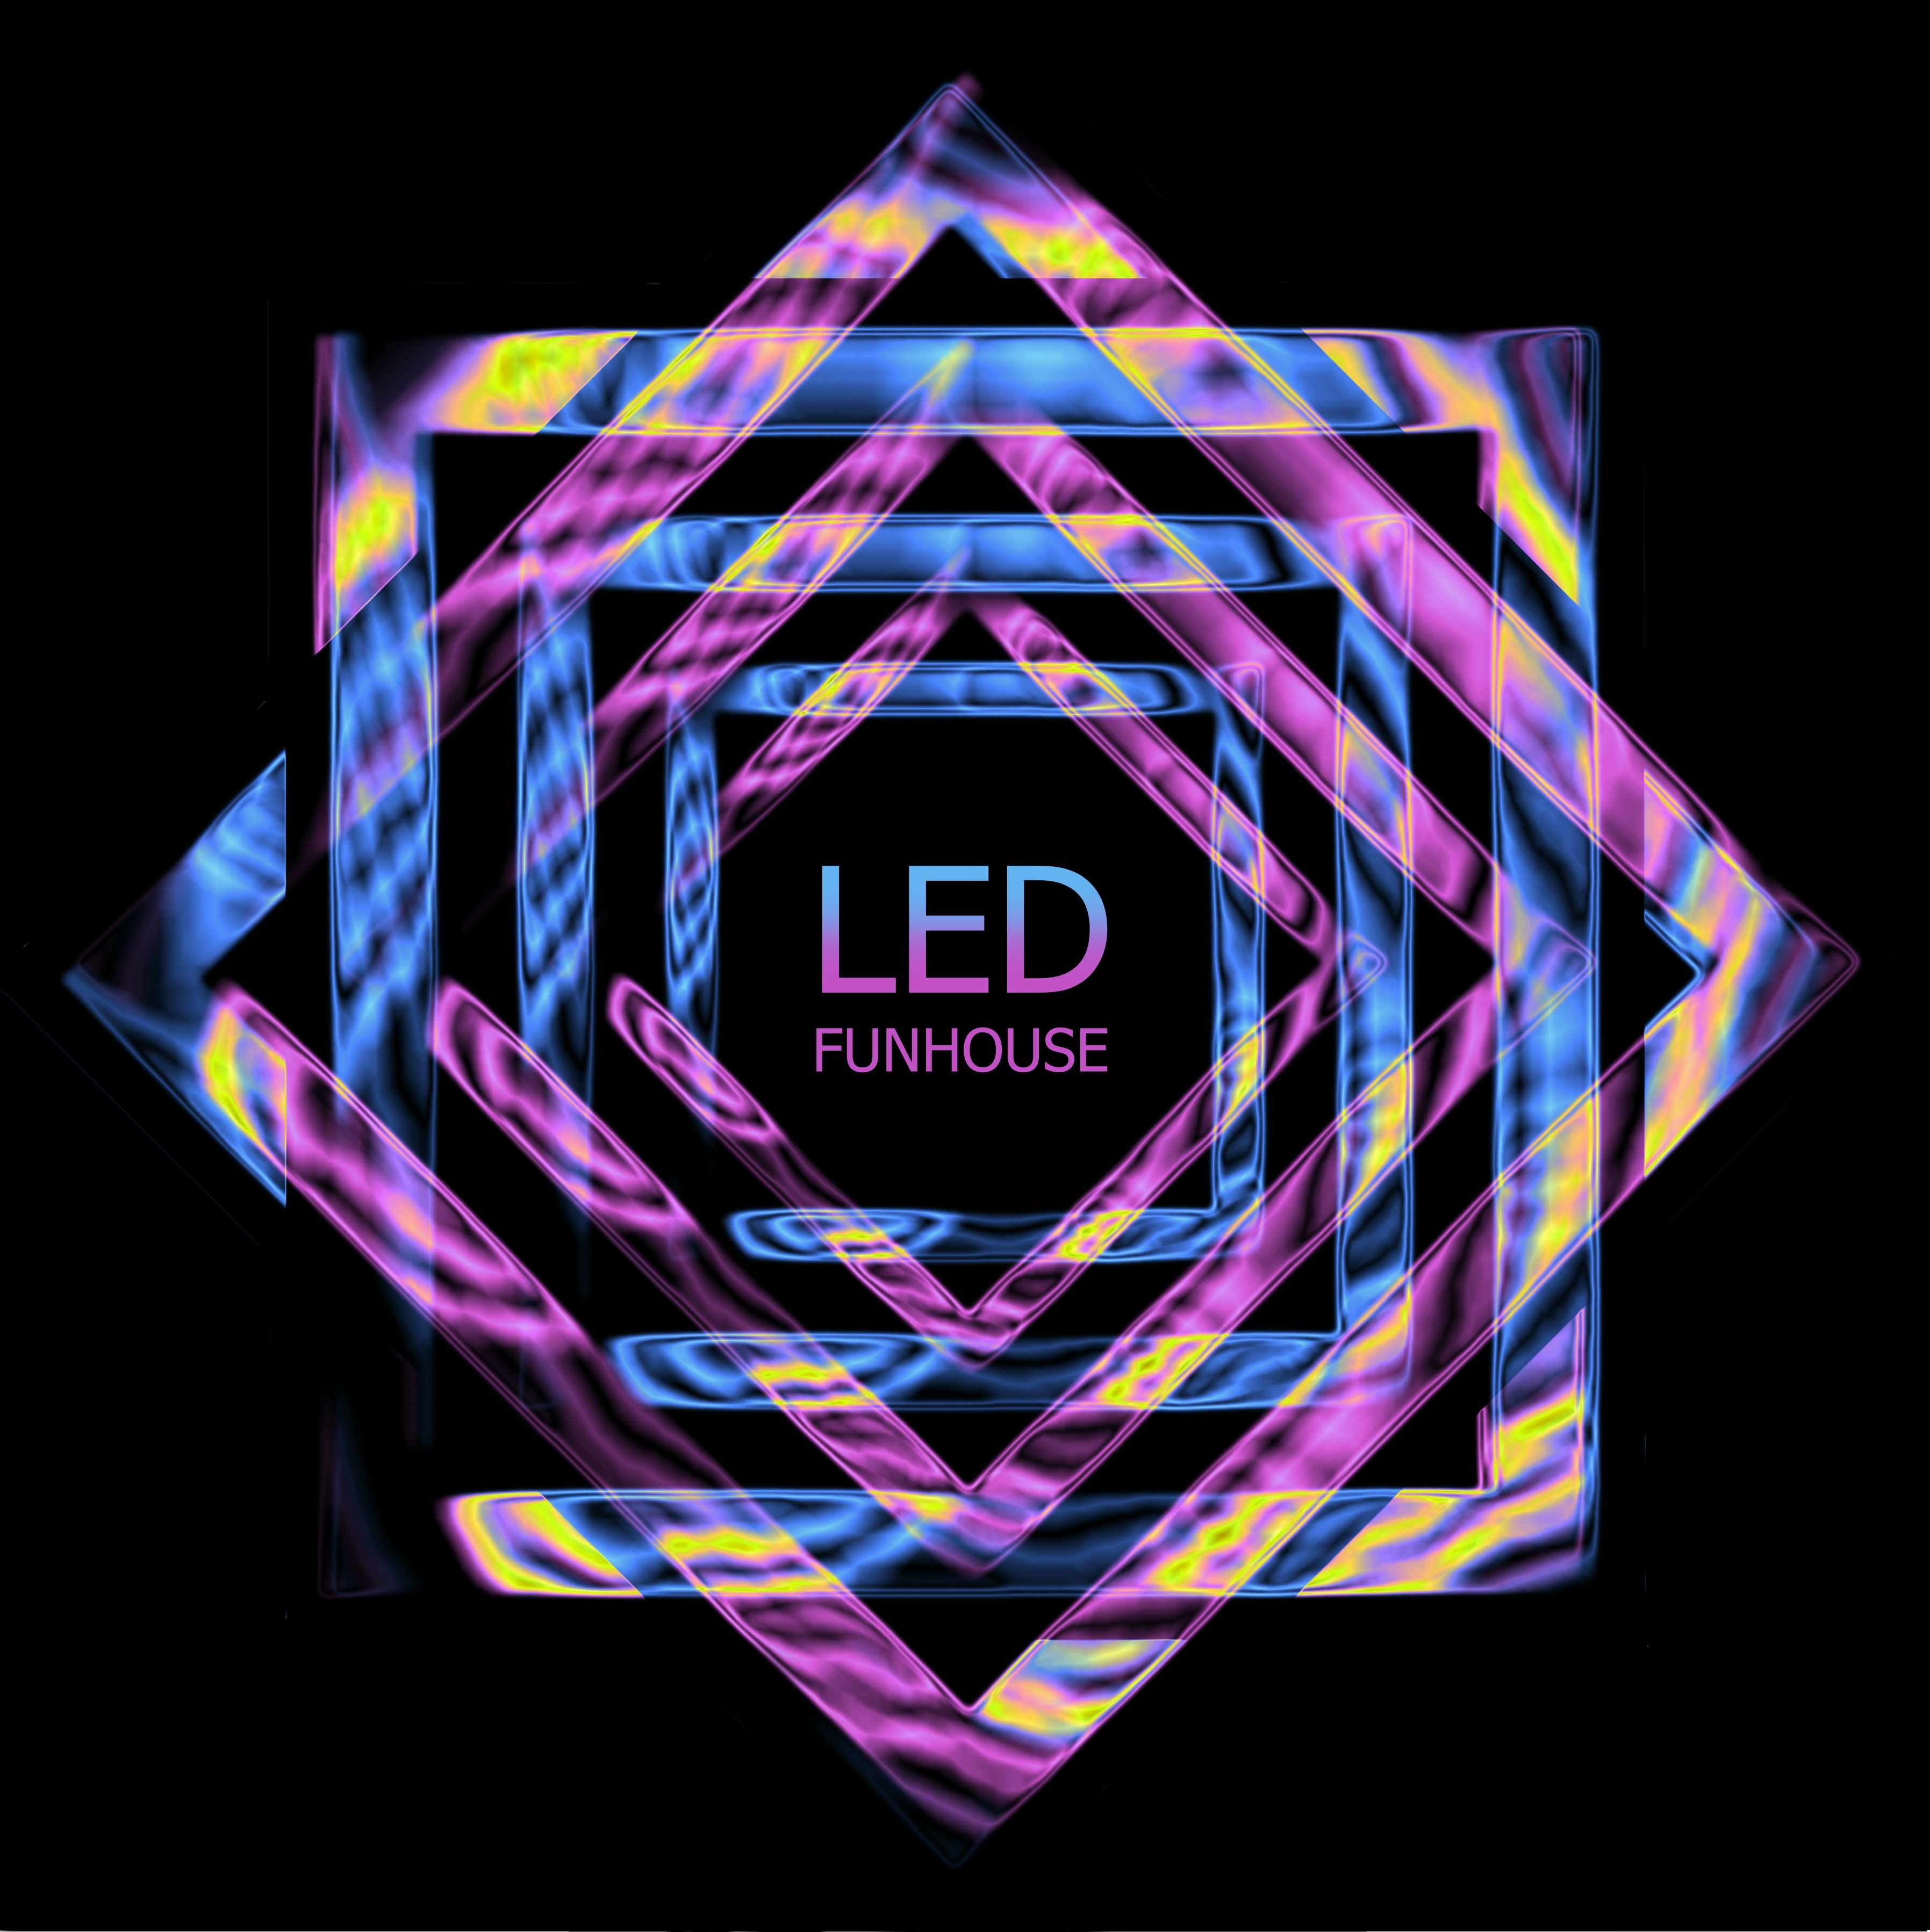 LED Funhouse LLC